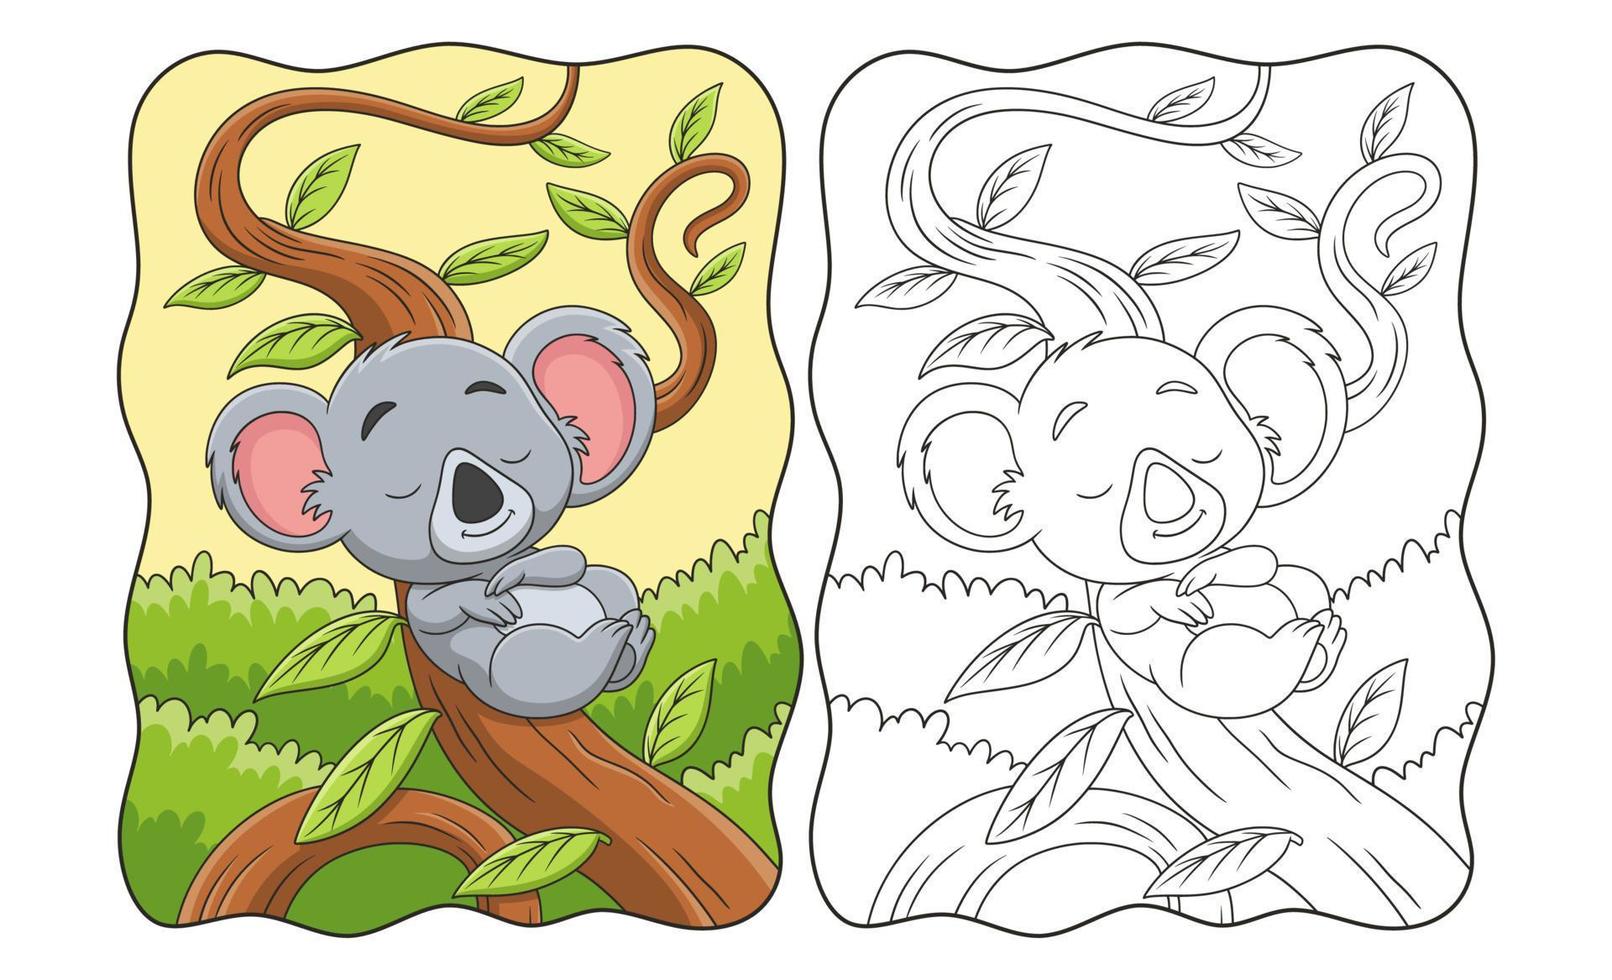 fumetto illustrazione koala addormentato appoggiato su un tronco d'albero nel mezzo della foresta durante il giorno libro o pagina per bambini vettore